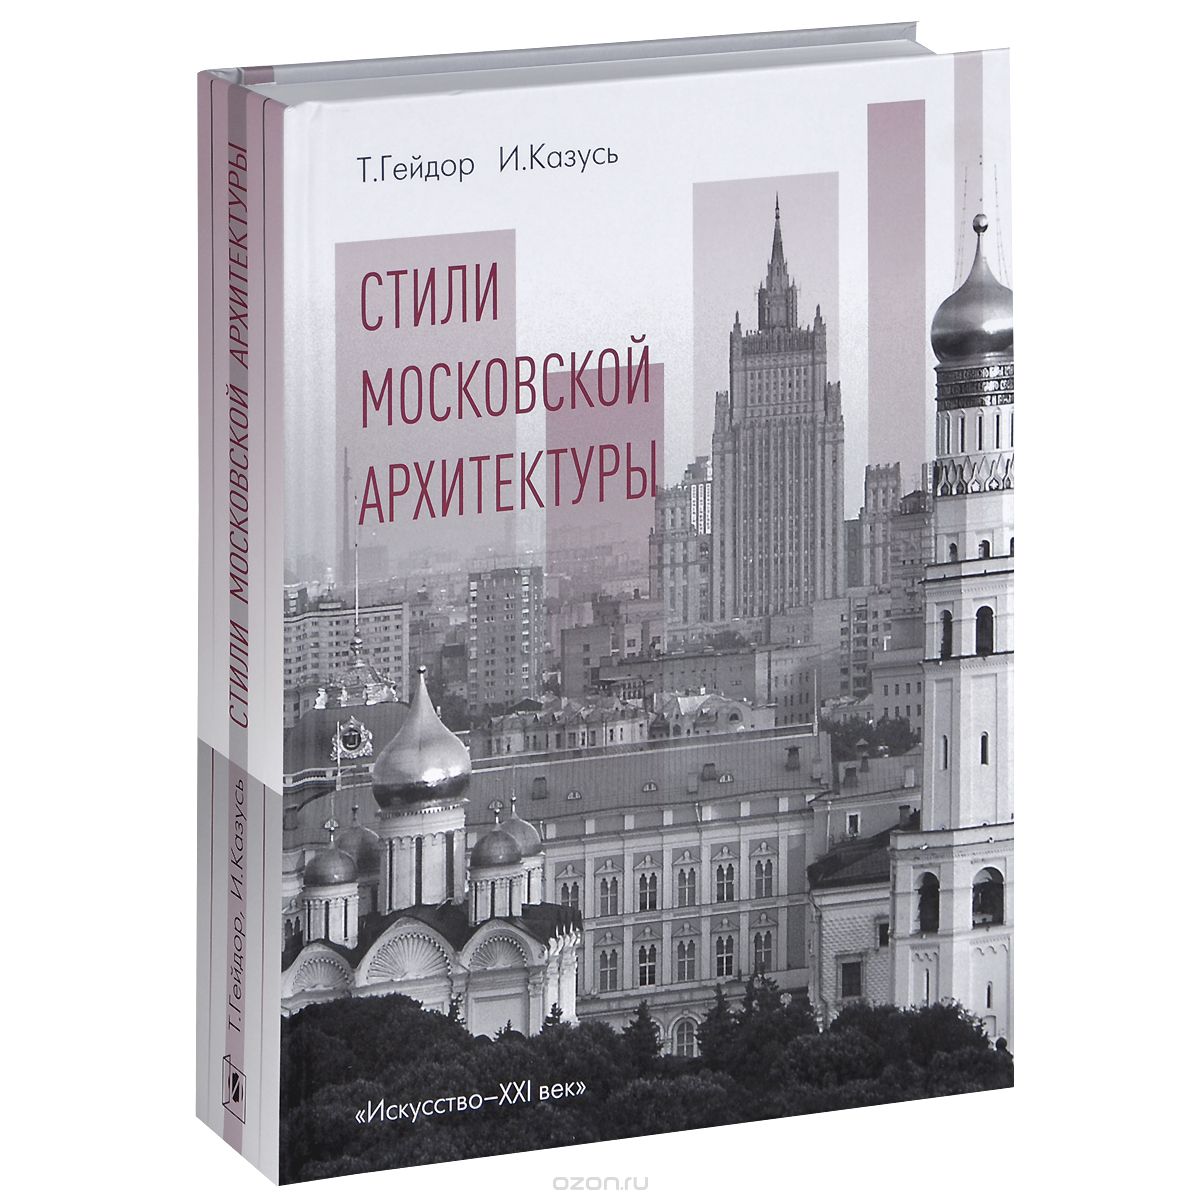 Скачать книгу "Стили московской архитектуры, Т. Гейдор, И. Казусь"